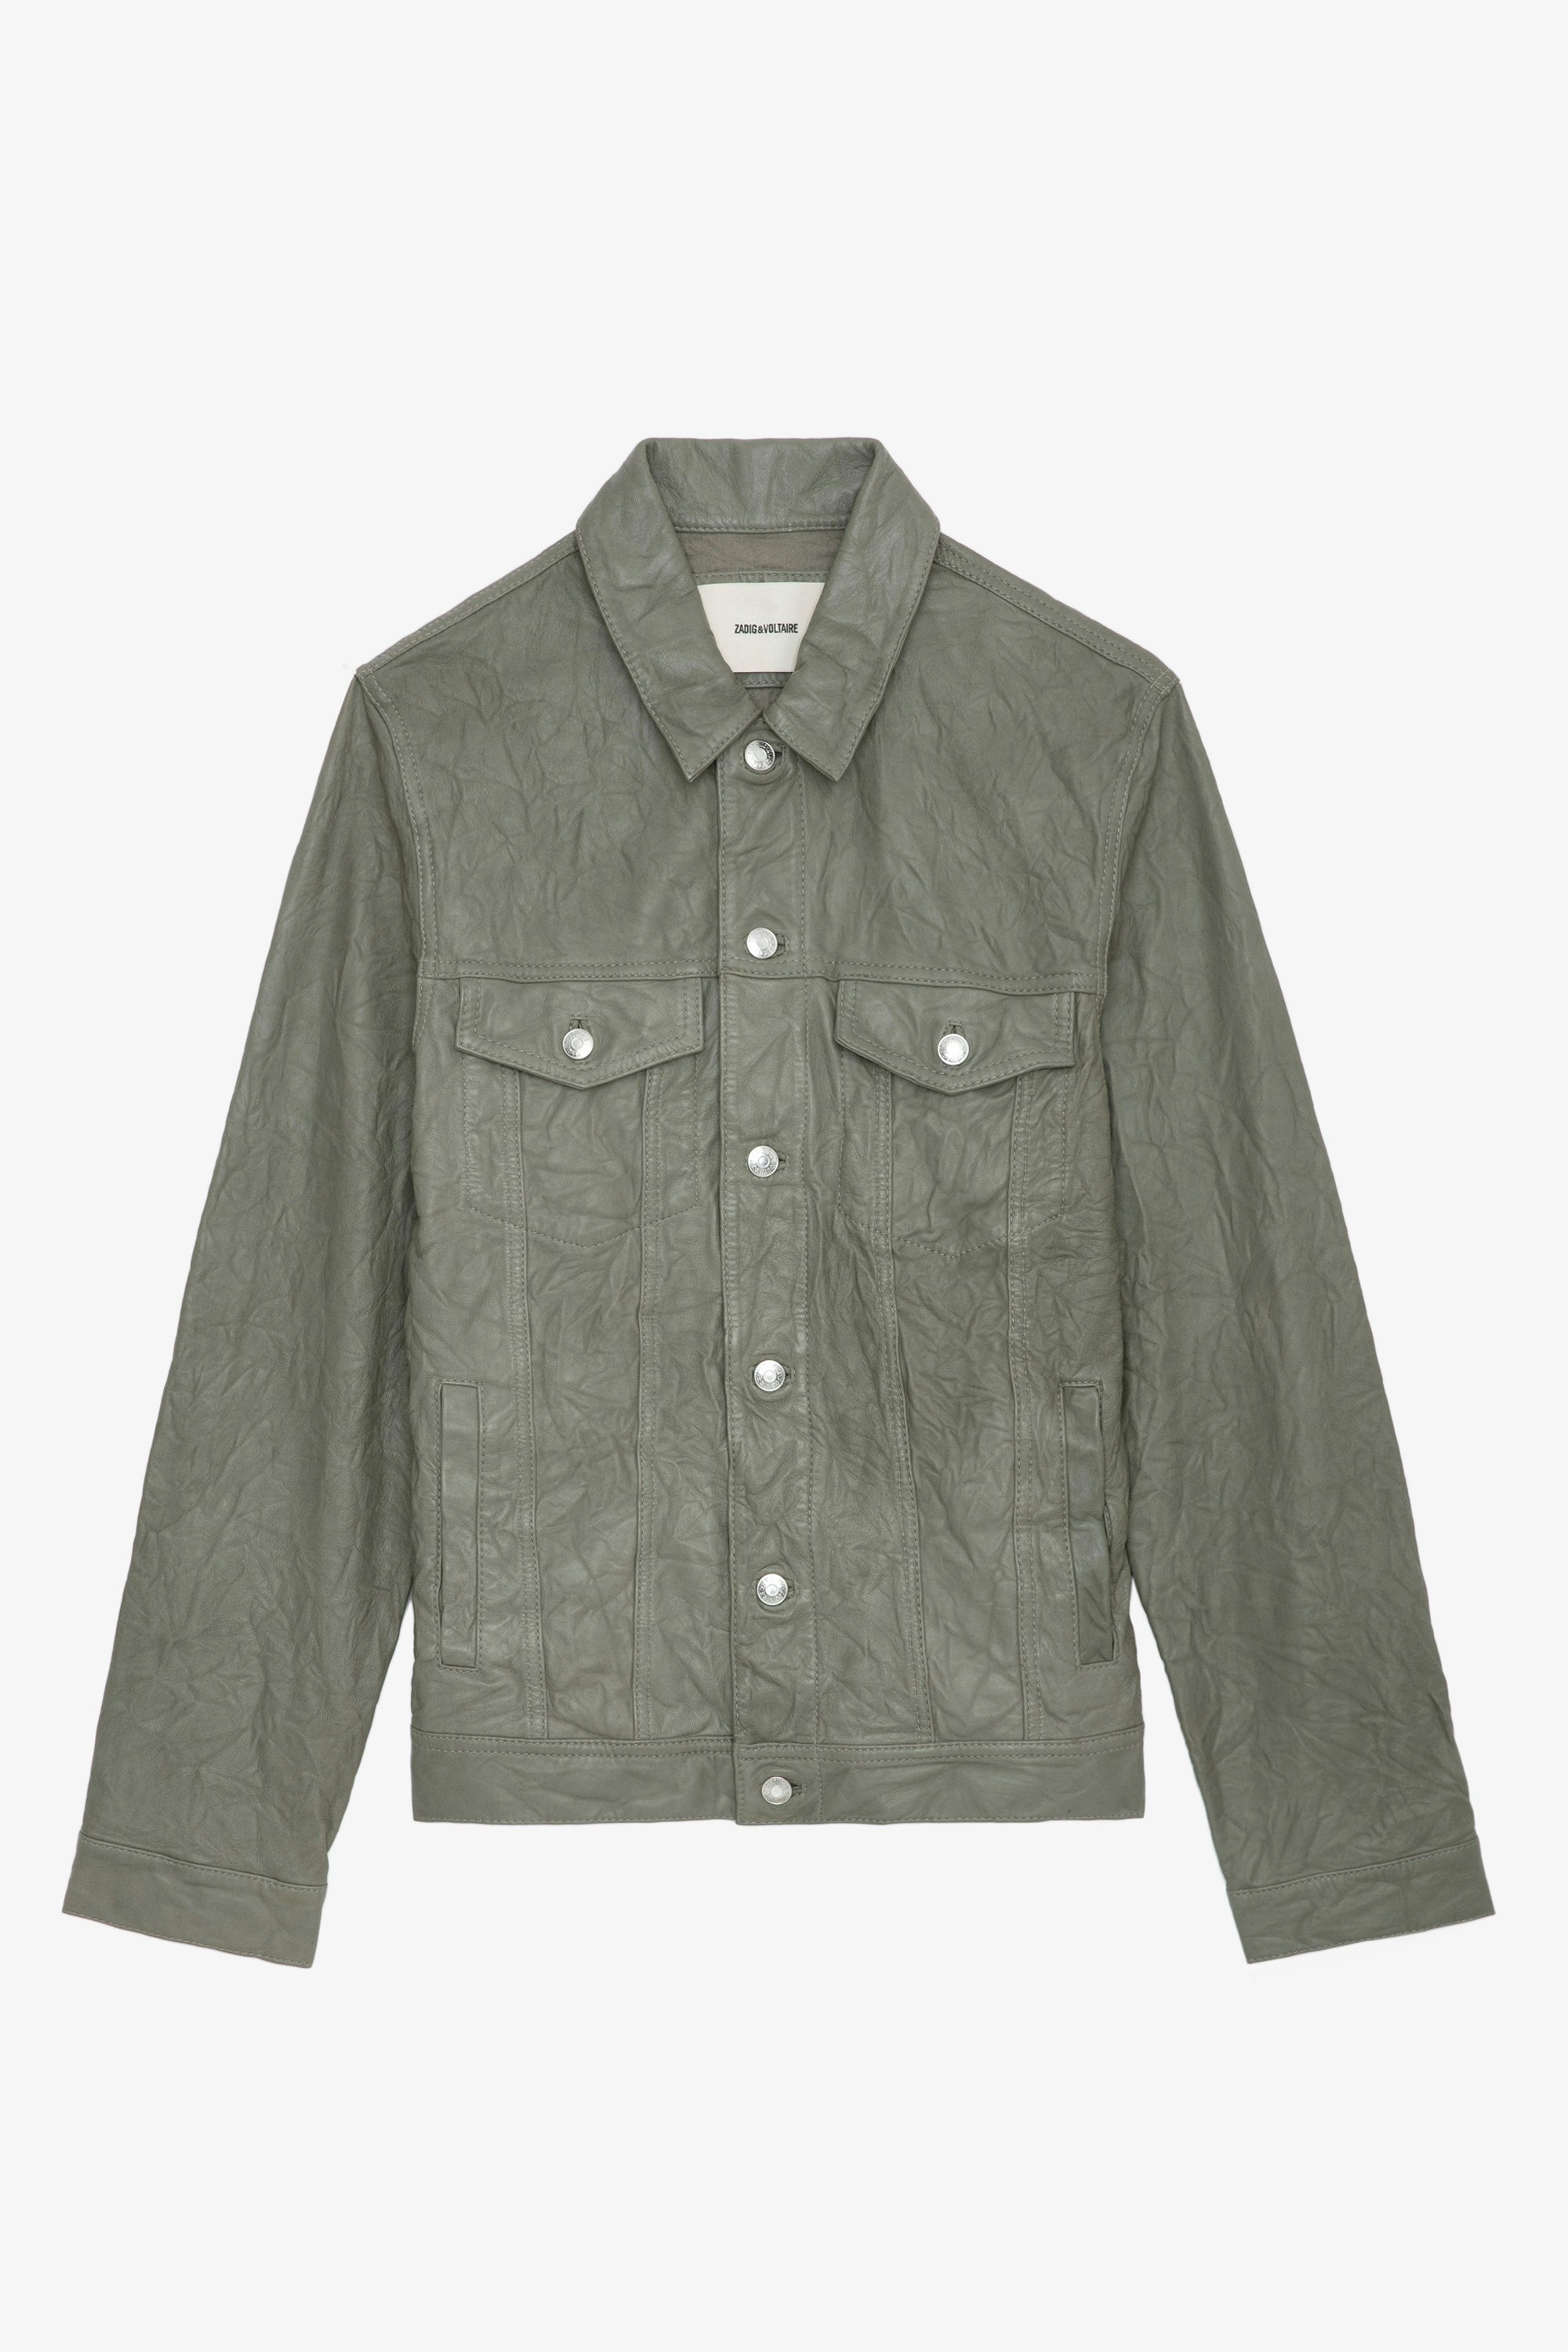 Base Crinkled Leather Jacket - Men's crinkled leather jacket.